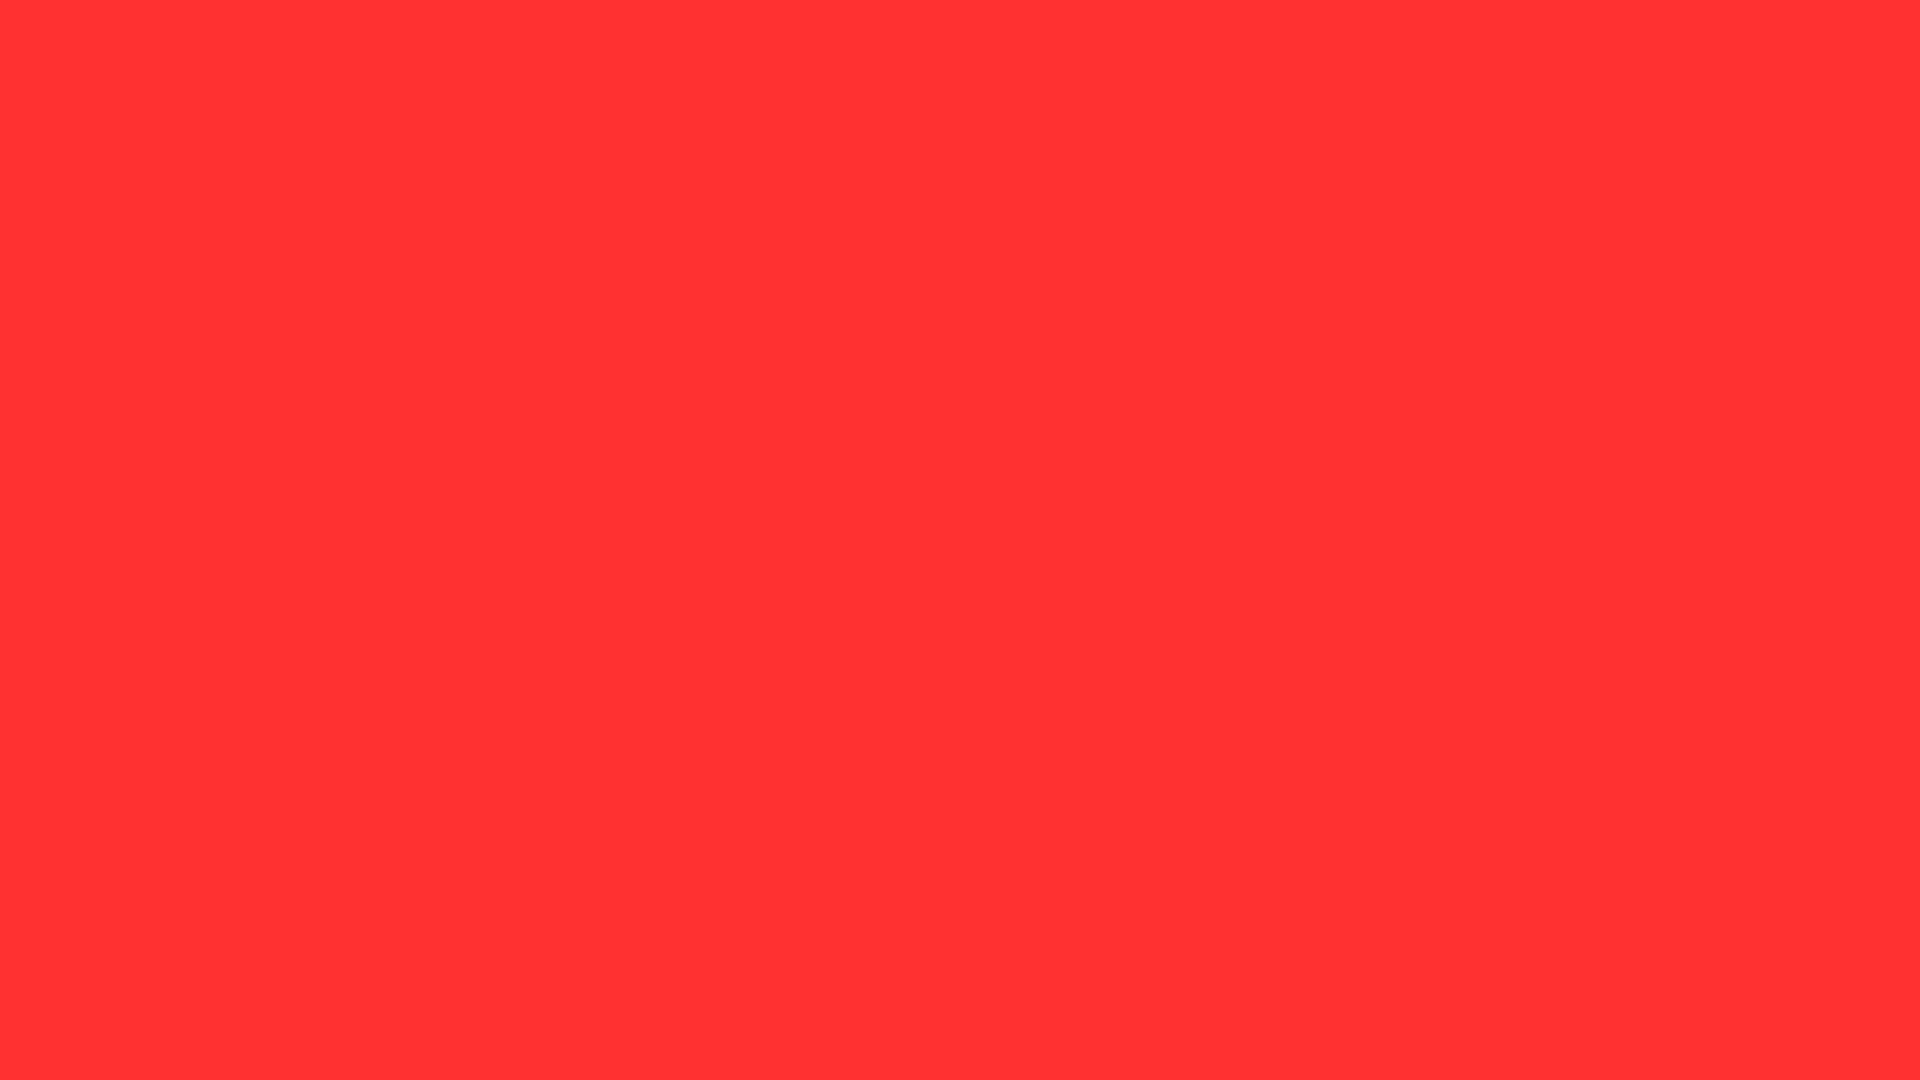 Neon Red là mã màu HTML nổi tiếng và thú vị nhất. Nếu bạn đang muốn khám phá những thông tin thú vị xoay quanh mã màu này, hãy xem hình ảnh trên. Bên cạnh đó, bạn còn nhận được nhiều thông tin bổ ích như sự kiện nào làm nên tên gọi của Neon Red, và tại sao nó lại trở thành sự lựa chọn yêu thích của nhiều người.